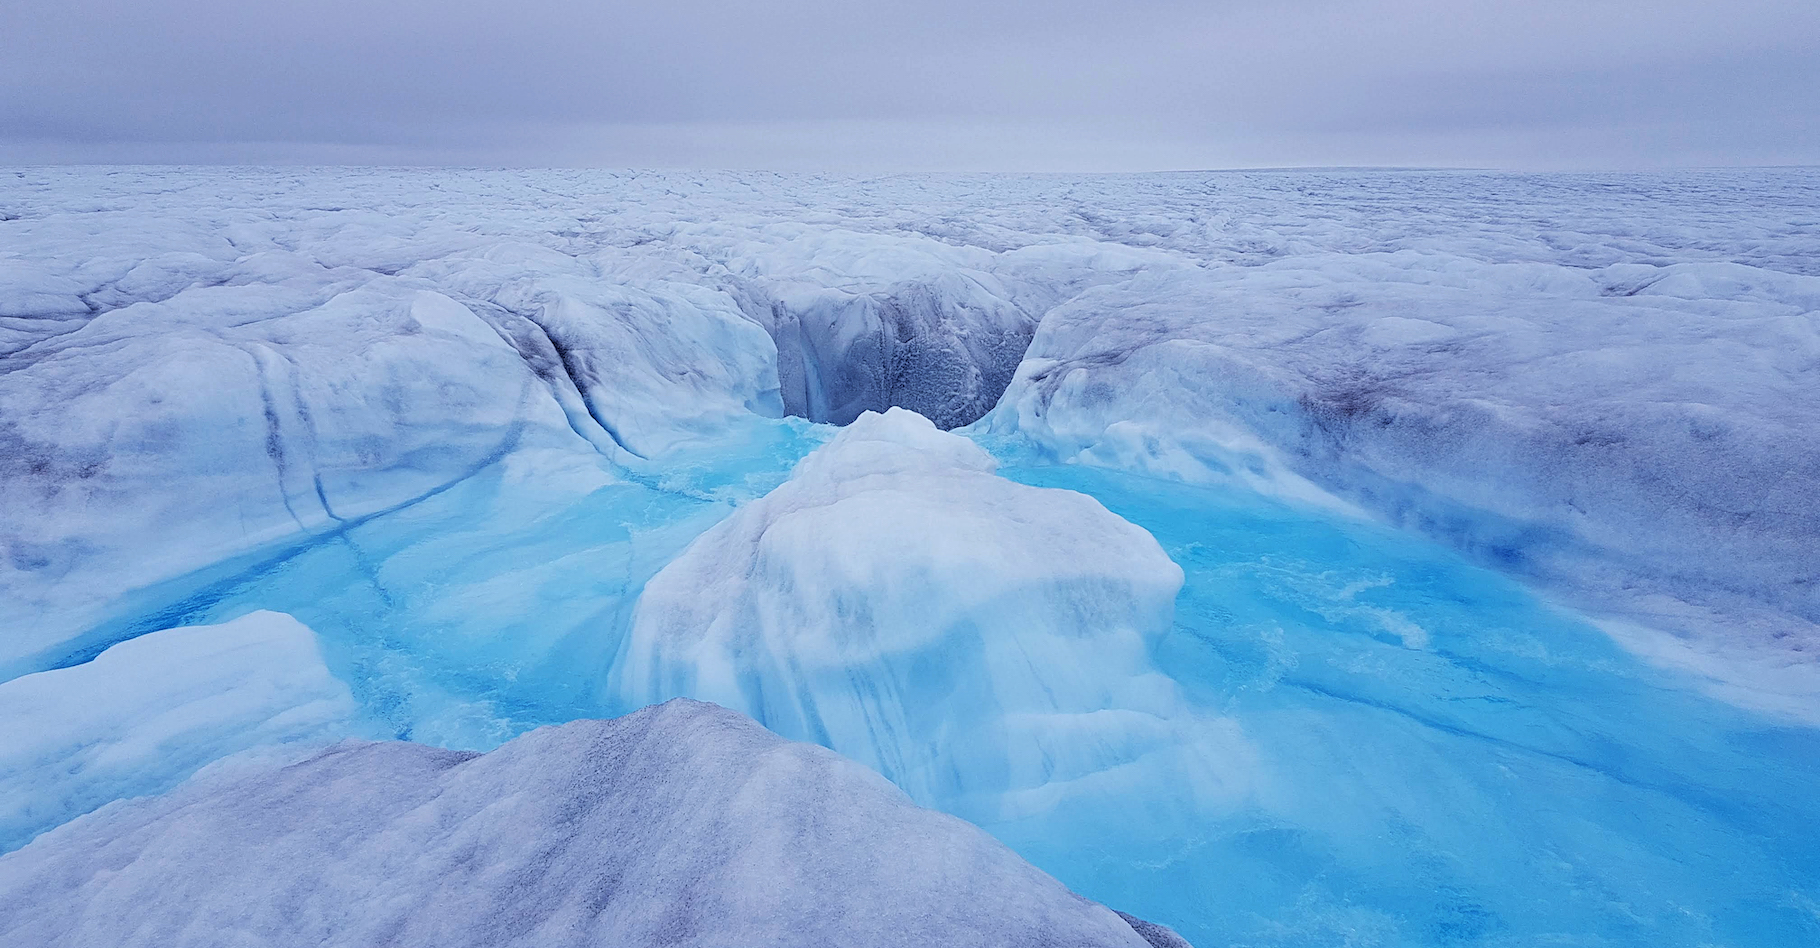 Des chercheurs de l’université de Cambridge (Royaume-Uni) montrent que l’eau de fonte qui tombe de la surface jusqu’à la base de la calotte glaciaire du Groenland accélère encore le processus initié par le réchauffement climatique. © Poul Christoffersen, Université de Cambridge